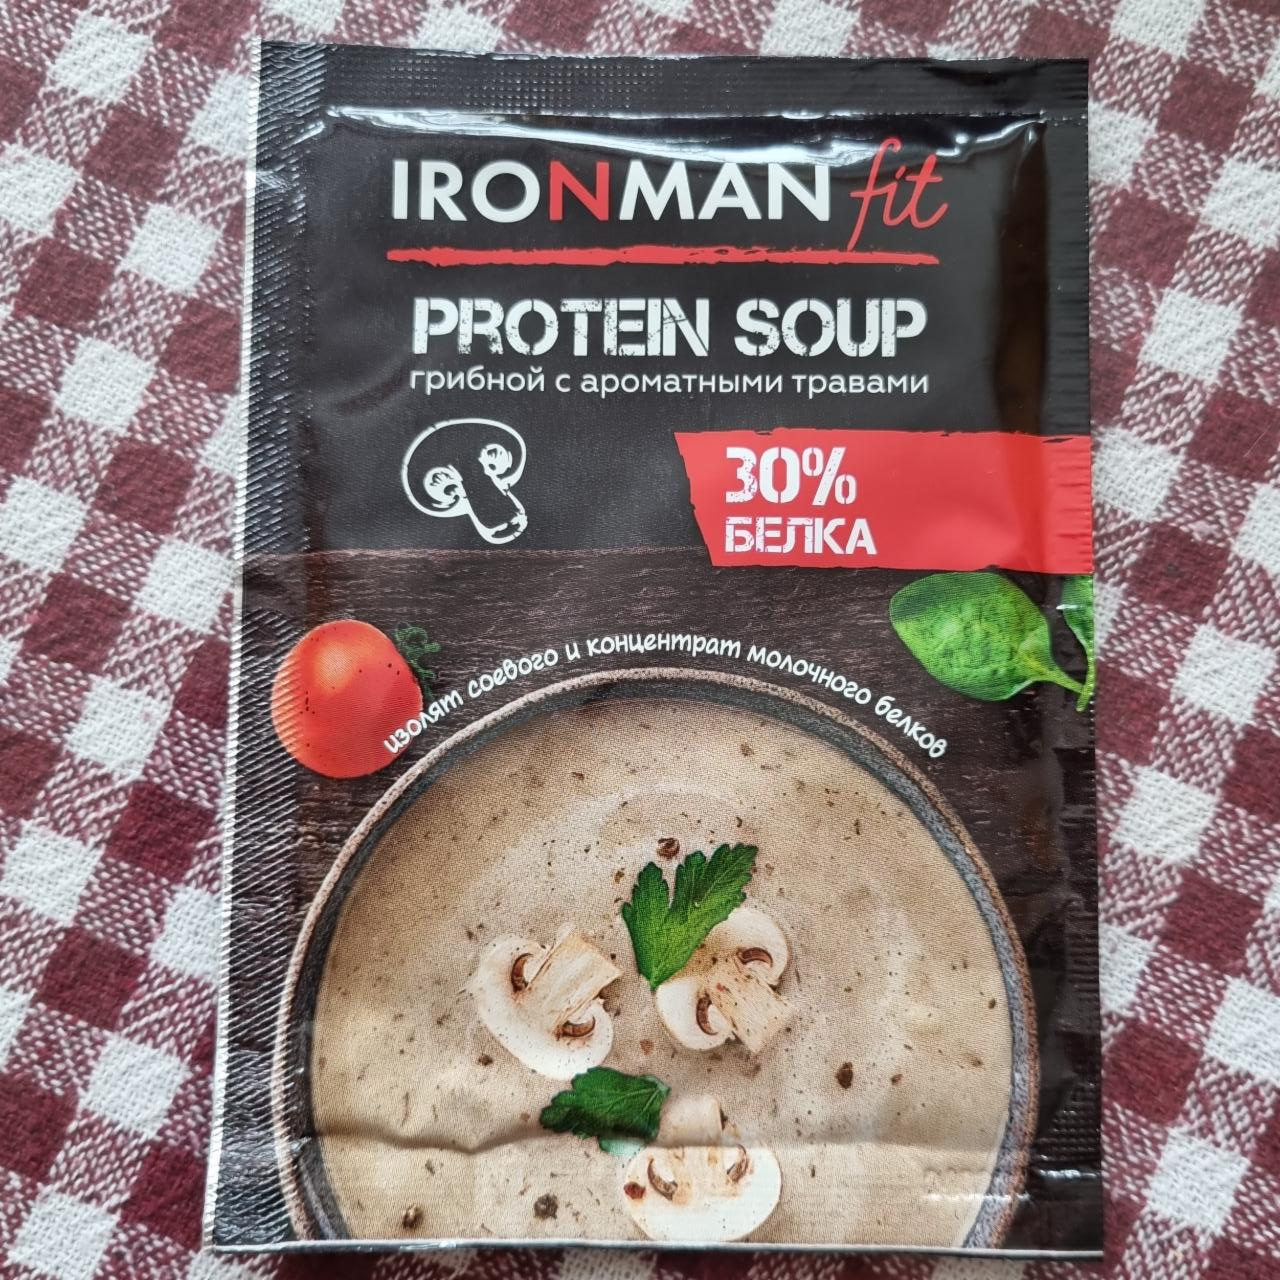 Фото - Protein soup грибной с ароматными травами Ironman fit